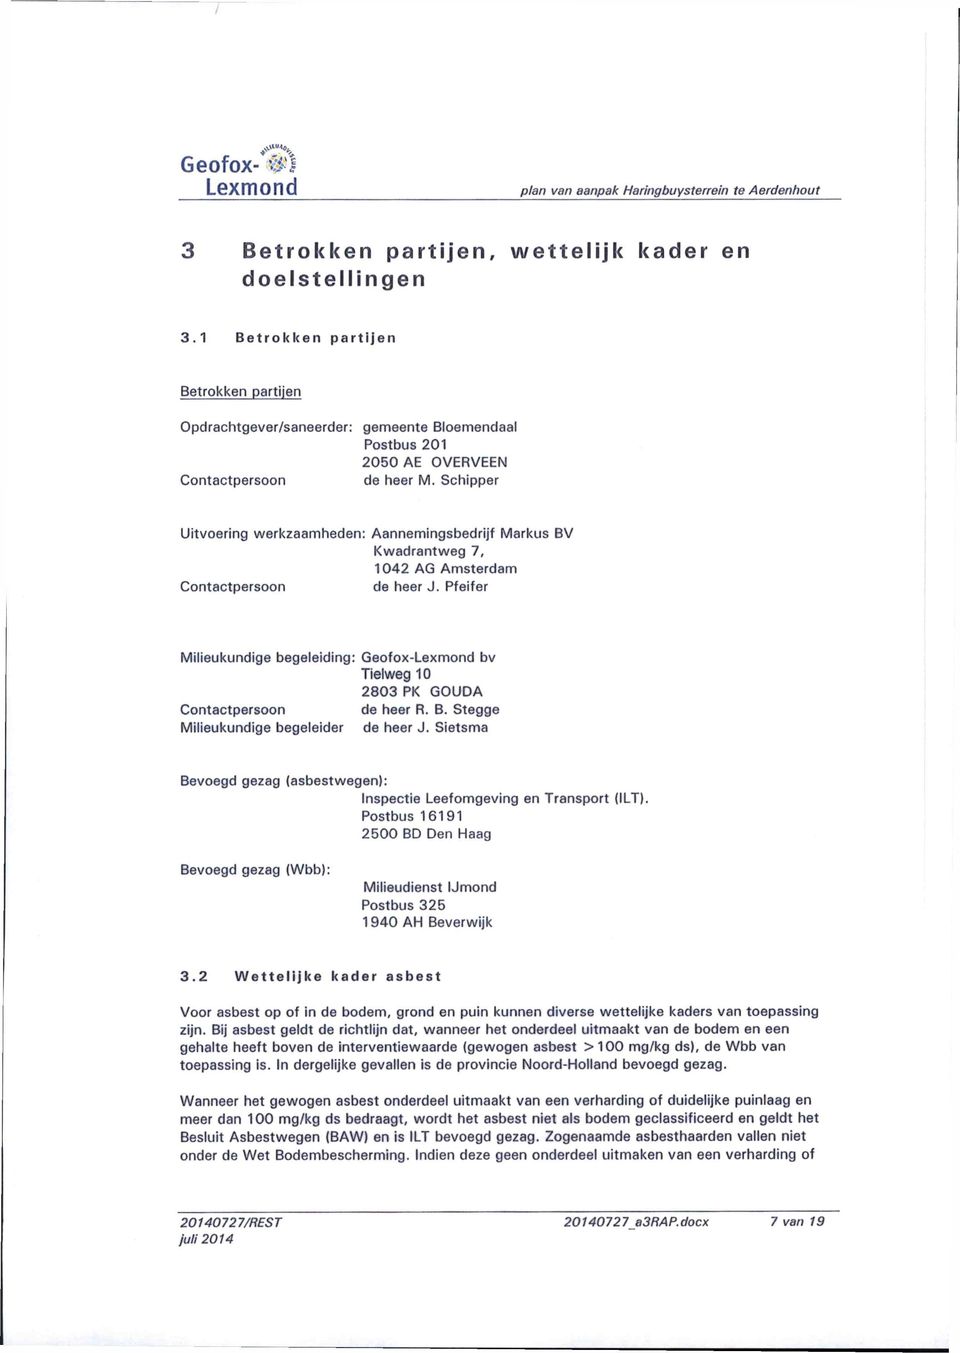 Schipper Uitvoering werkzaamheden: Contactpersoon Aannemingsbedrijf Markus BV Kwadrantweg 7, 1042 AG Amsterdam de heer J.